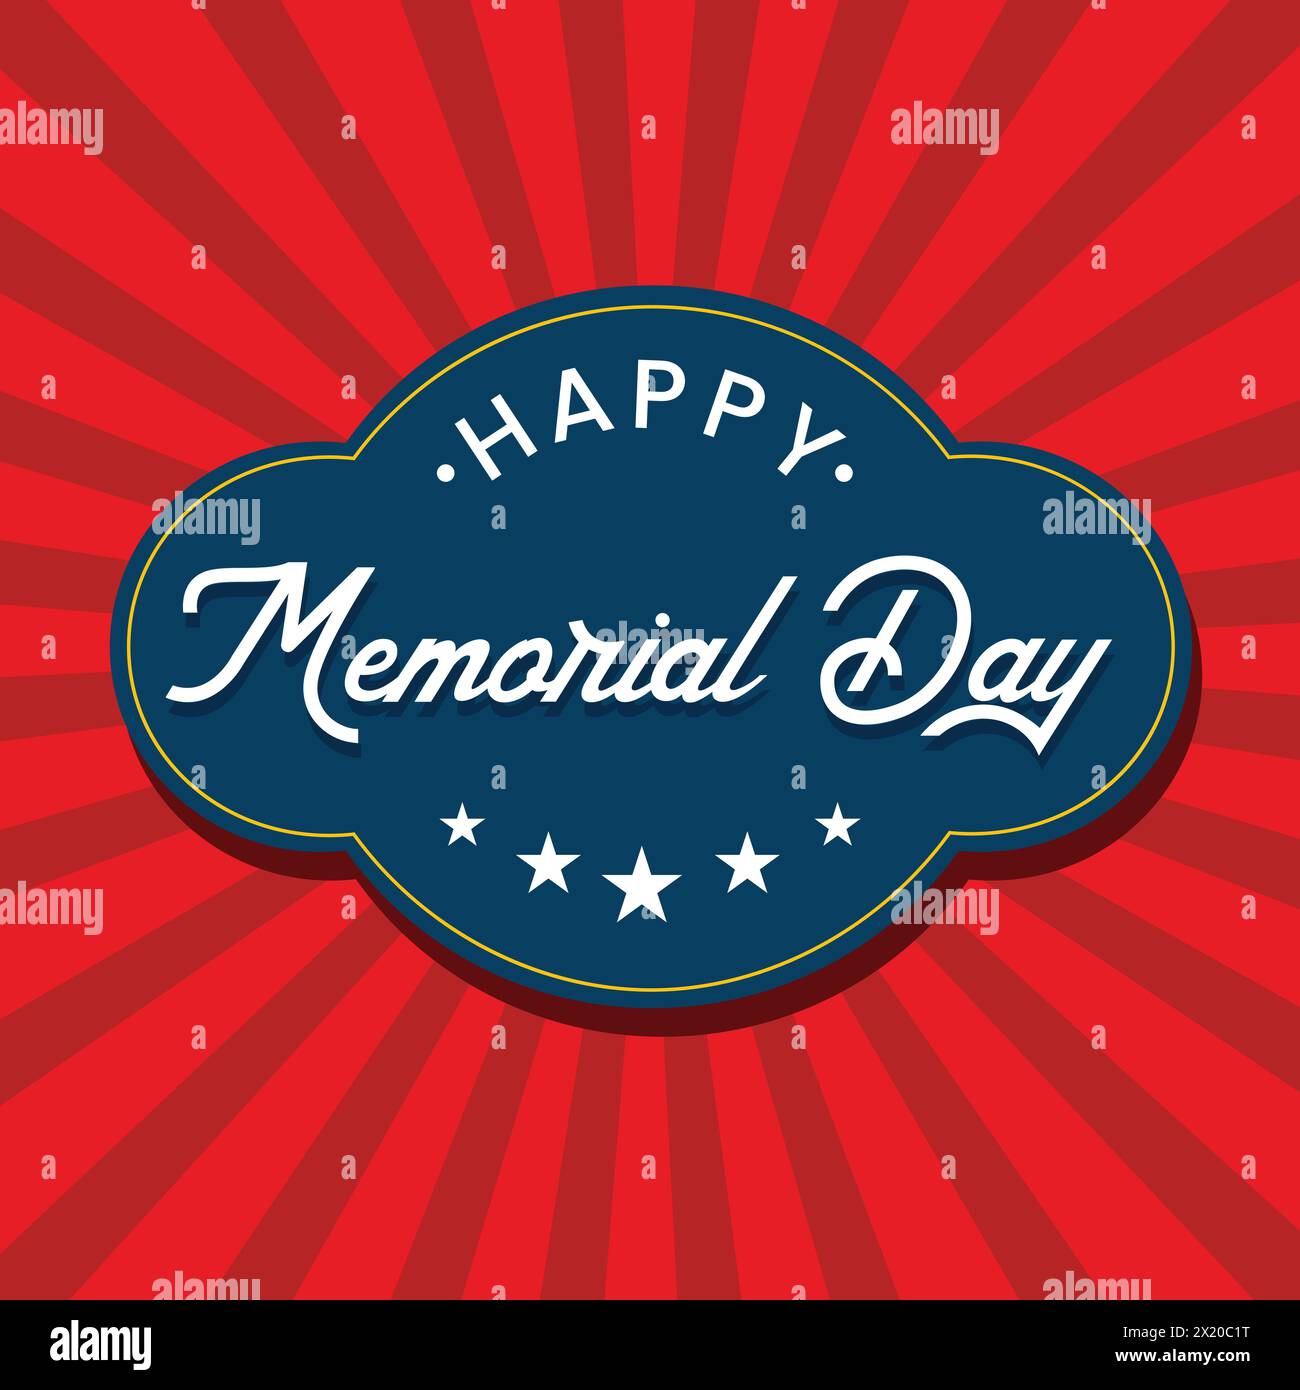 Adesivo per l'Happy Memorial Day. Illustrazione delle festività nazionali americane con bandiera USA di colore rosso e blu. Logo americano per le festività nazionali Illustrazione Vettoriale